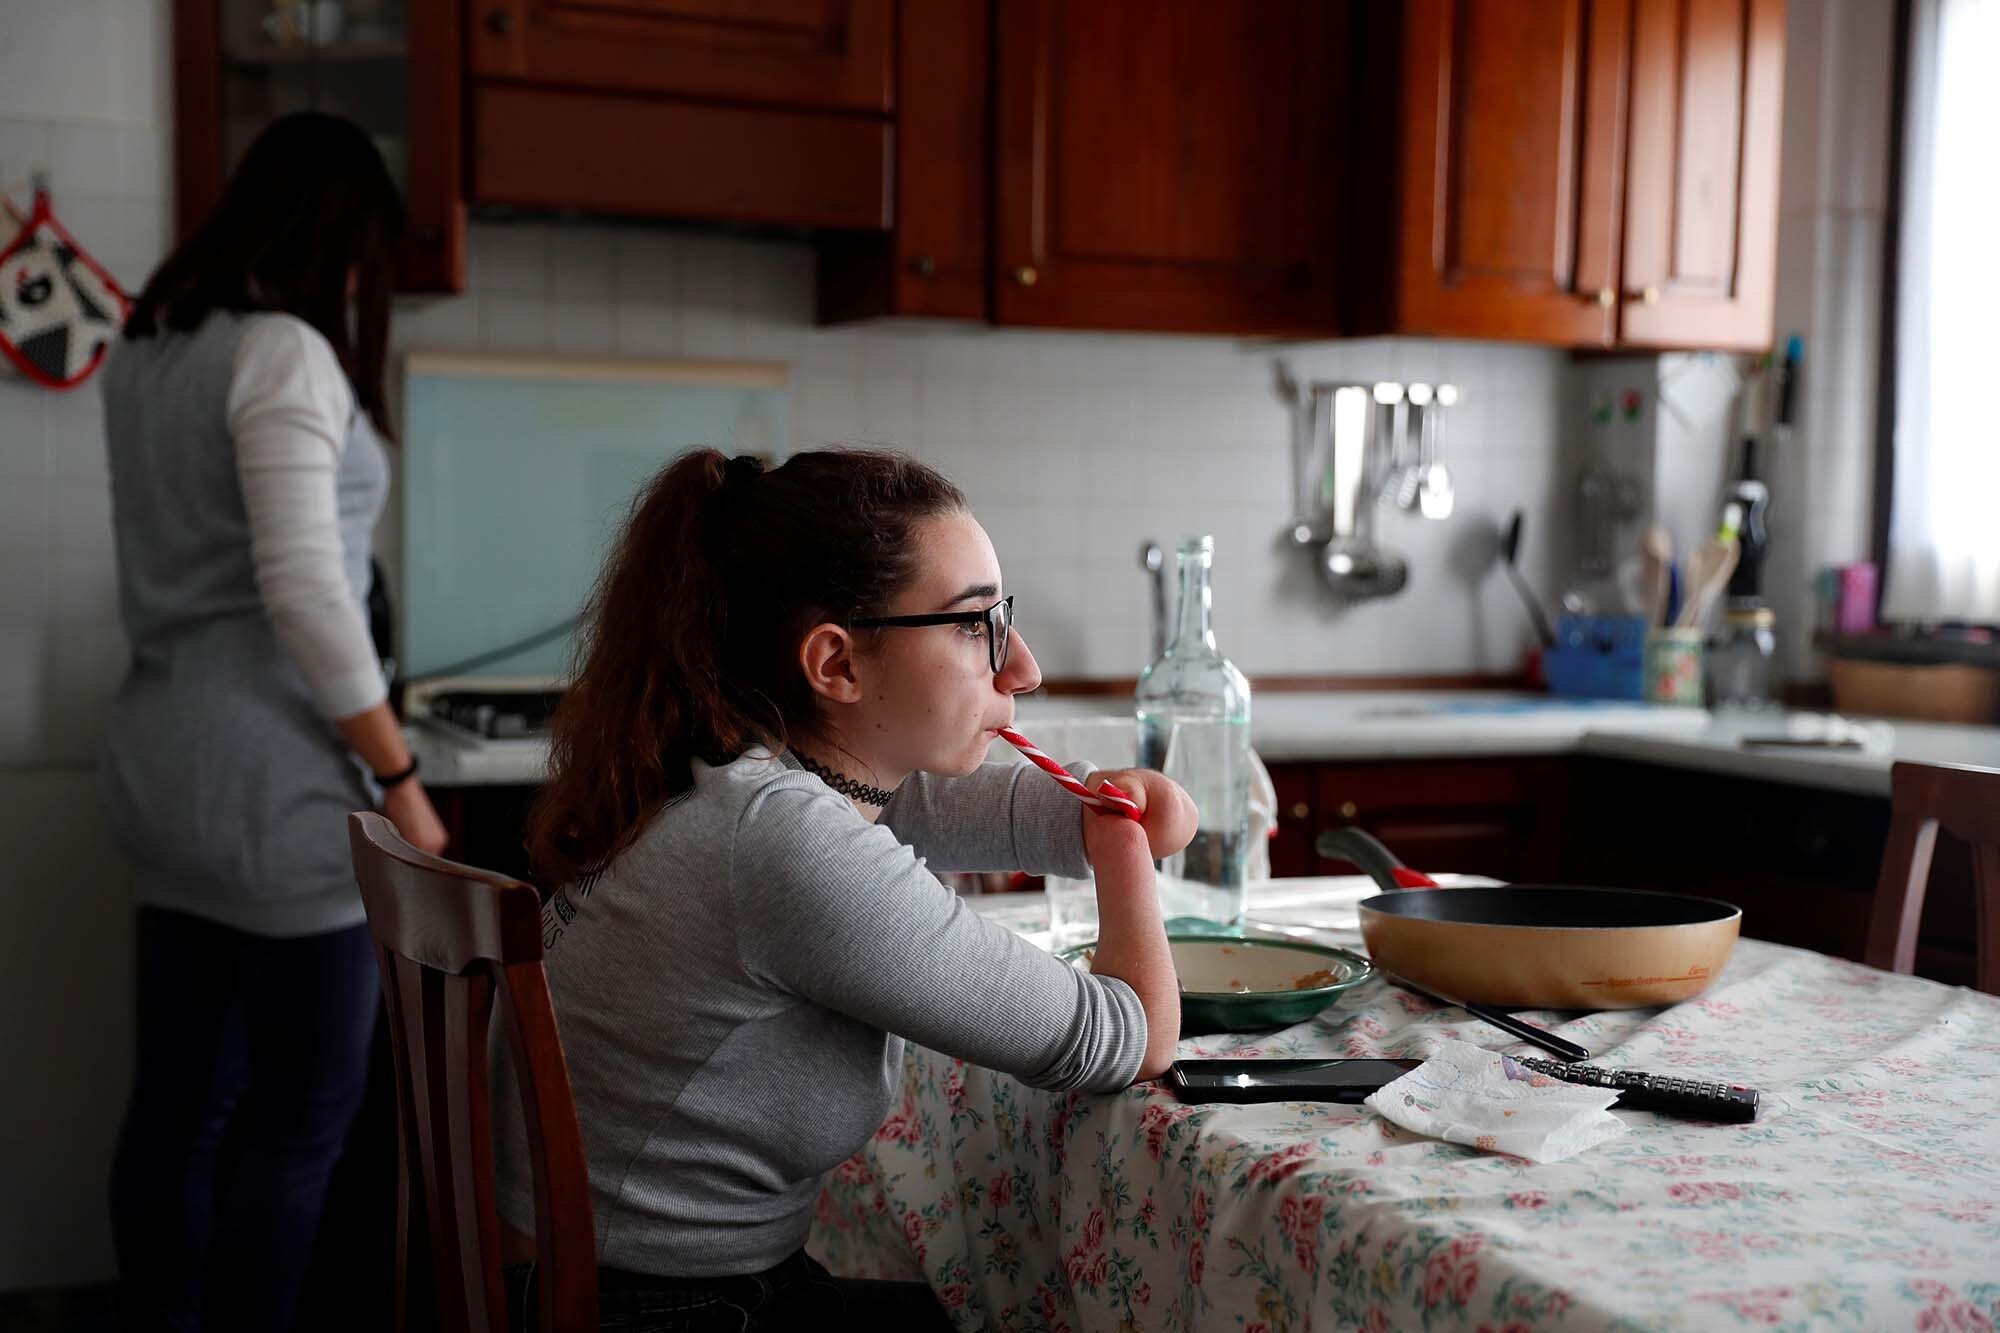 Francesca a casa con sua madre - foto di Yara Nardi/REUTERS